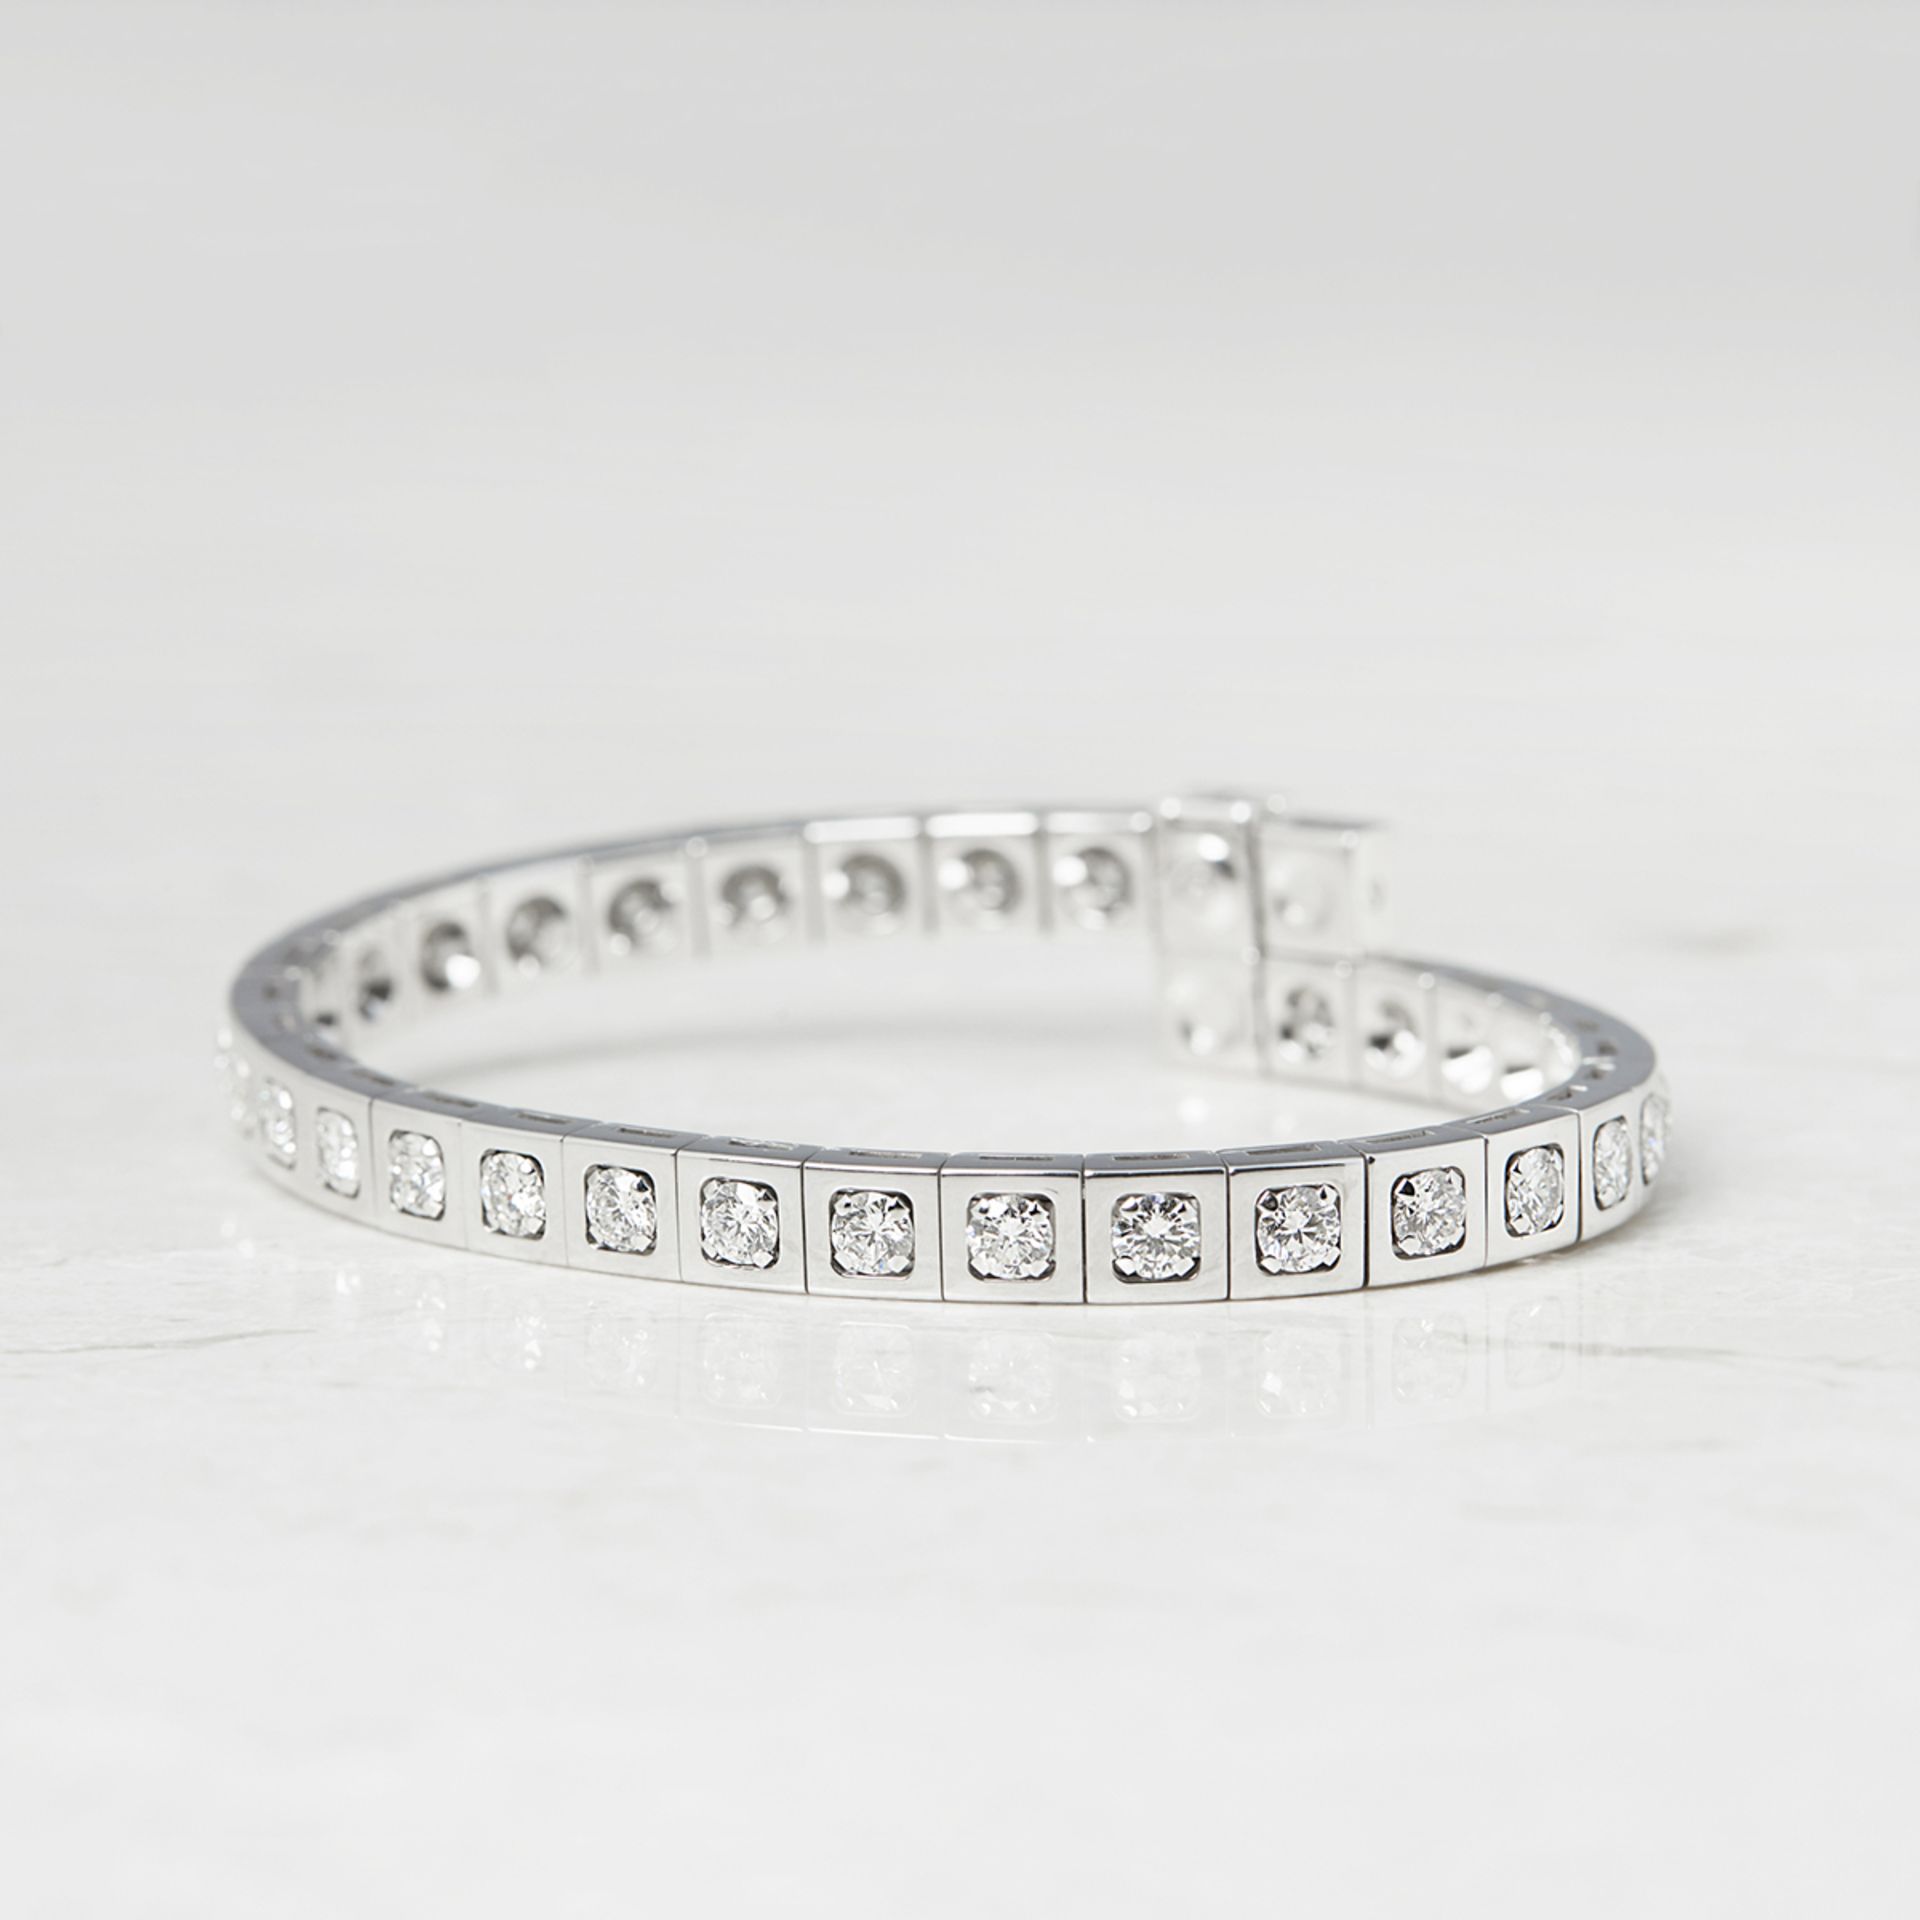 Cartier, 18k White Gold 6.00ct Diamond Tectonique Bracelet - Image 2 of 9